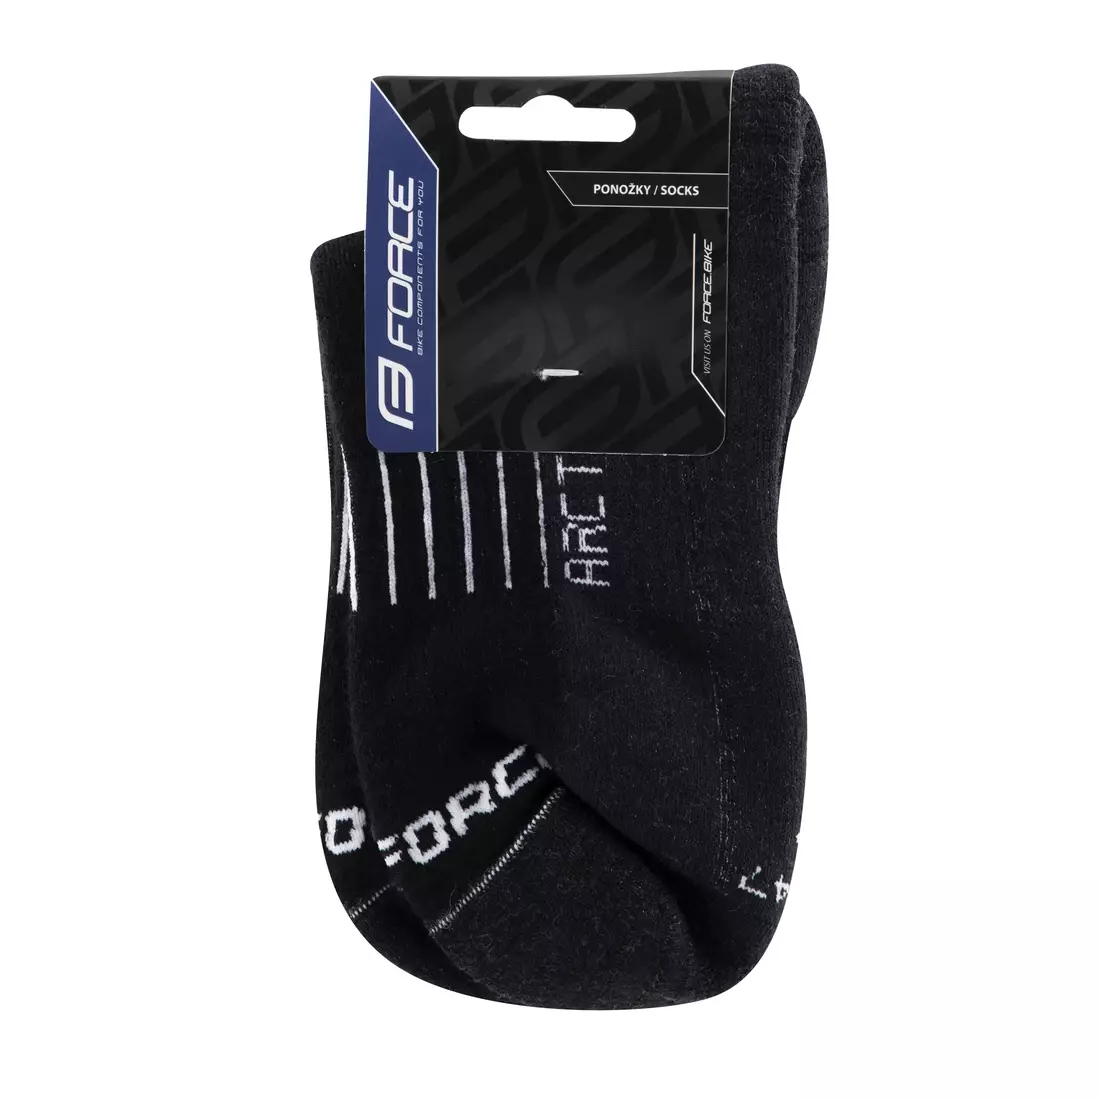 FORCE Cyklistické / sportovní ponožky ARCTIC, Černý a bílý 9009154